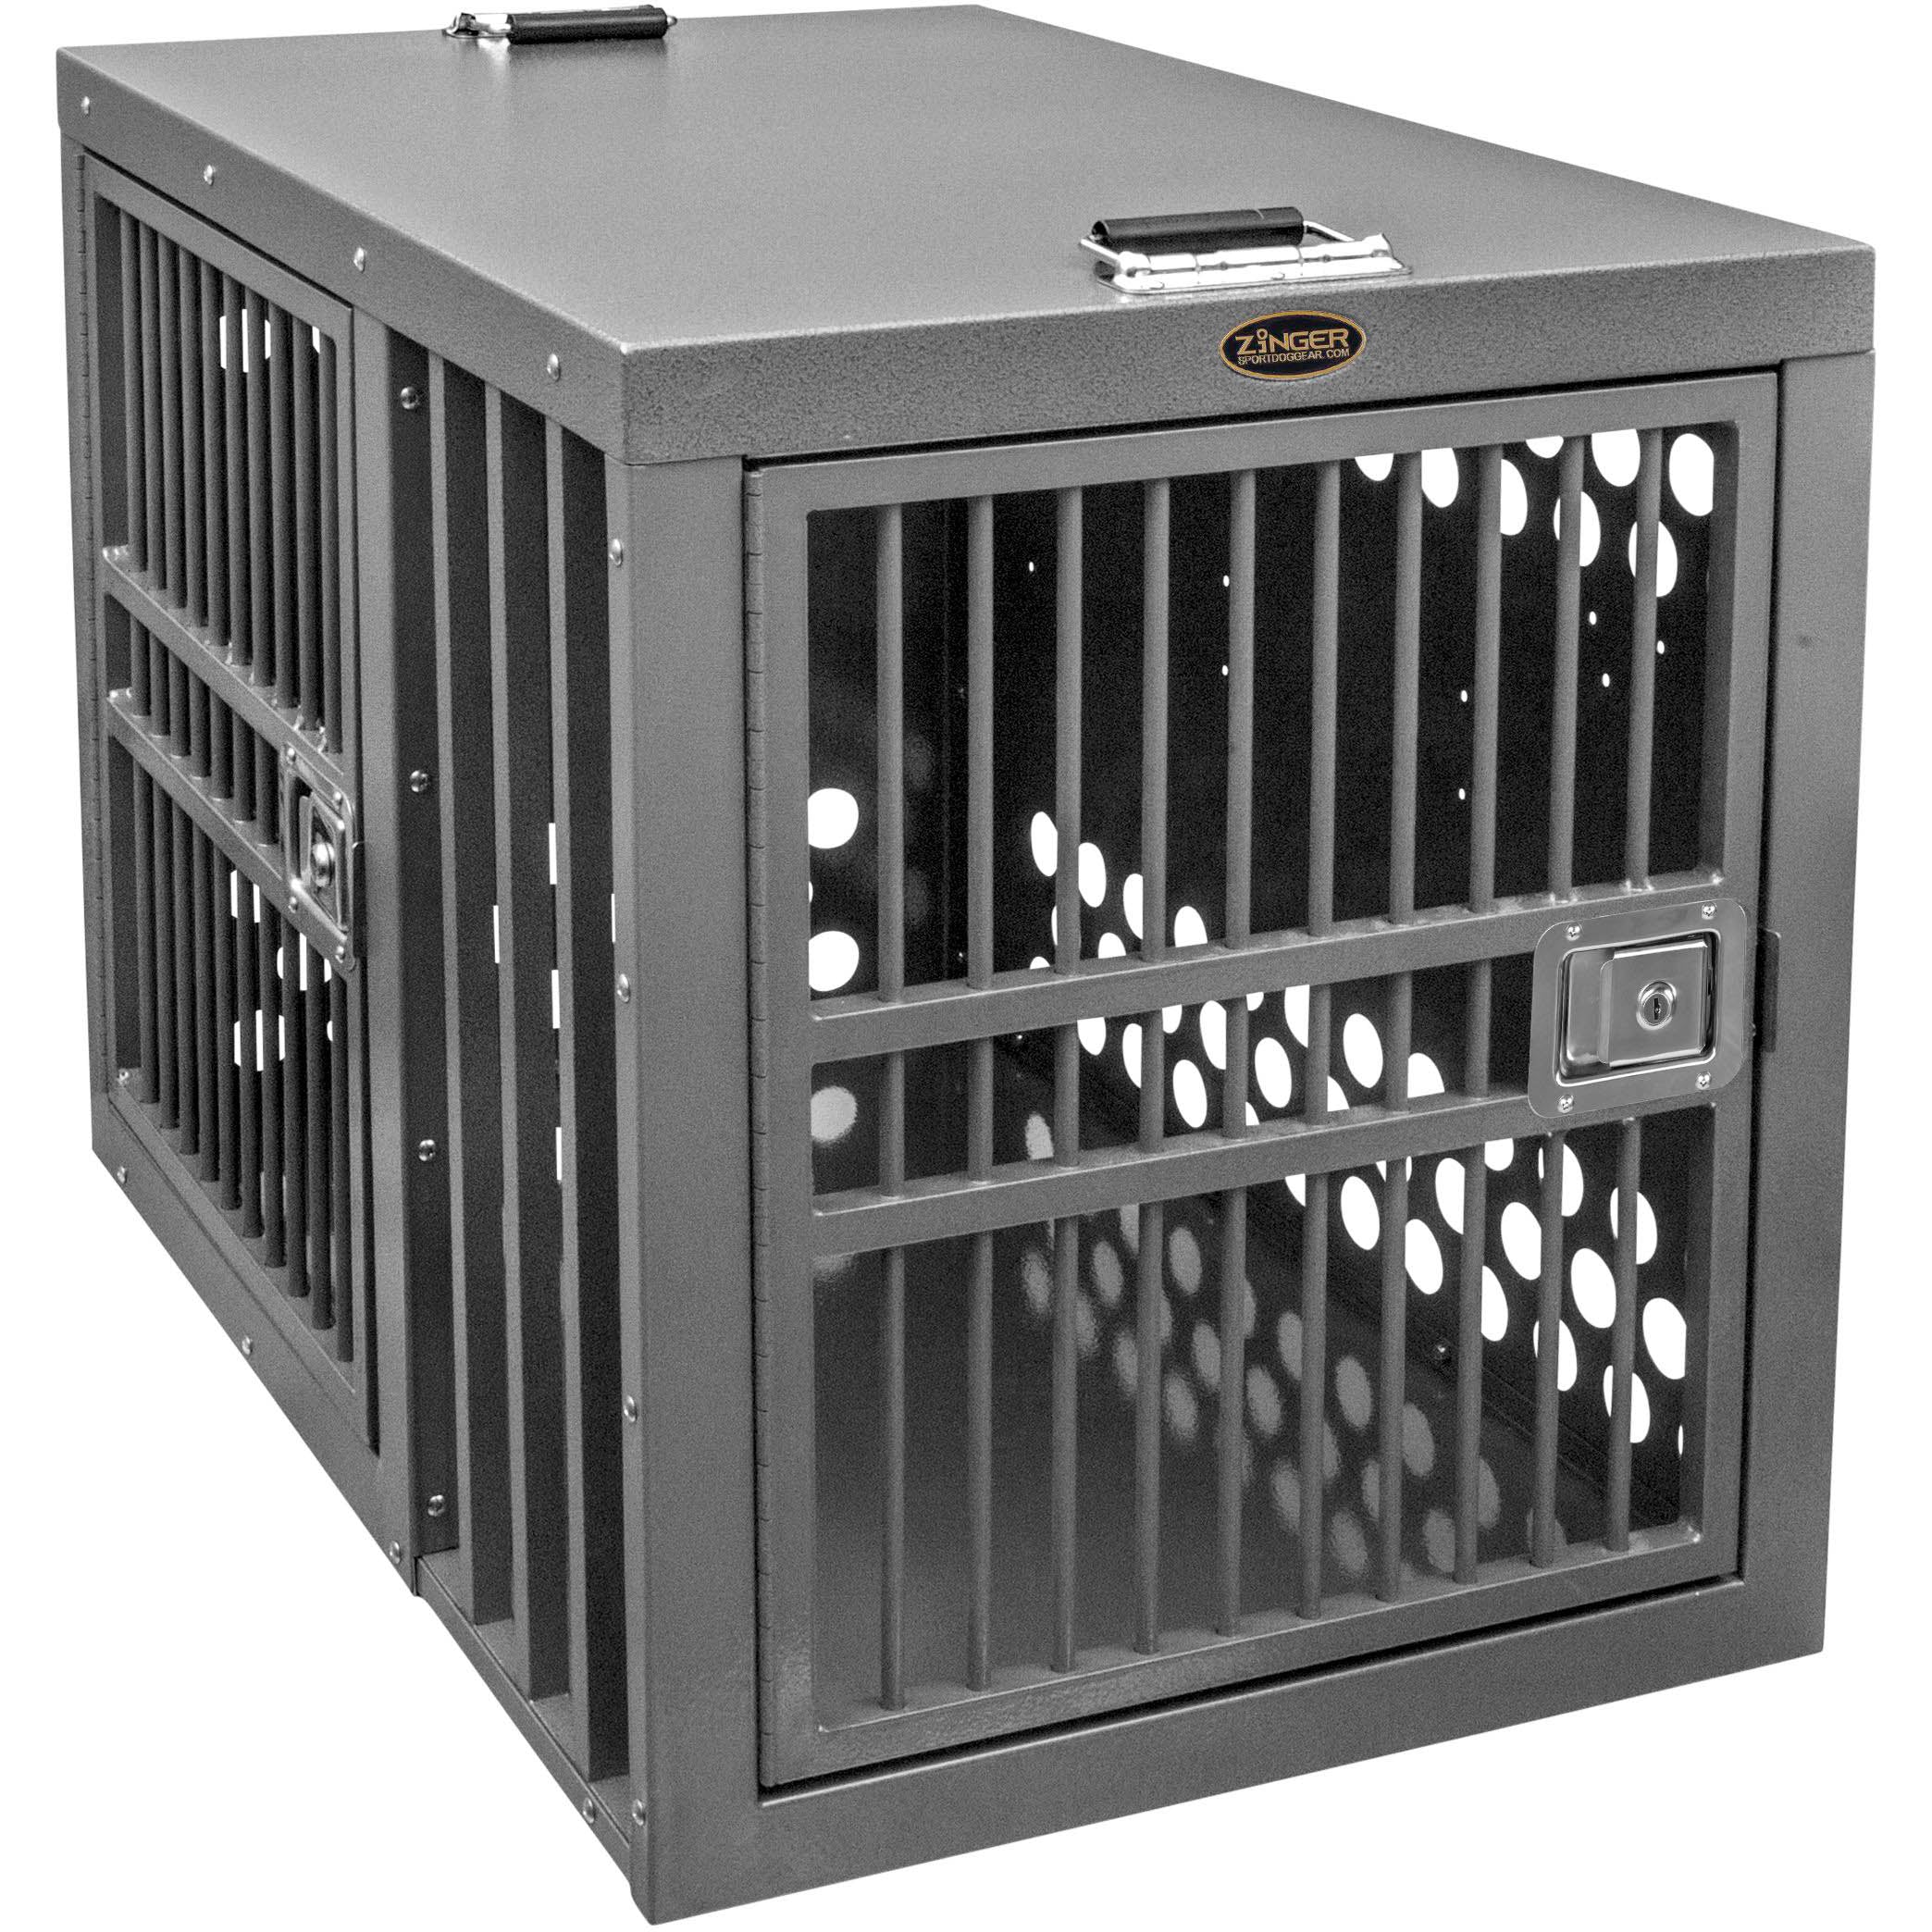 Zinger Deluxe 5000 Crate